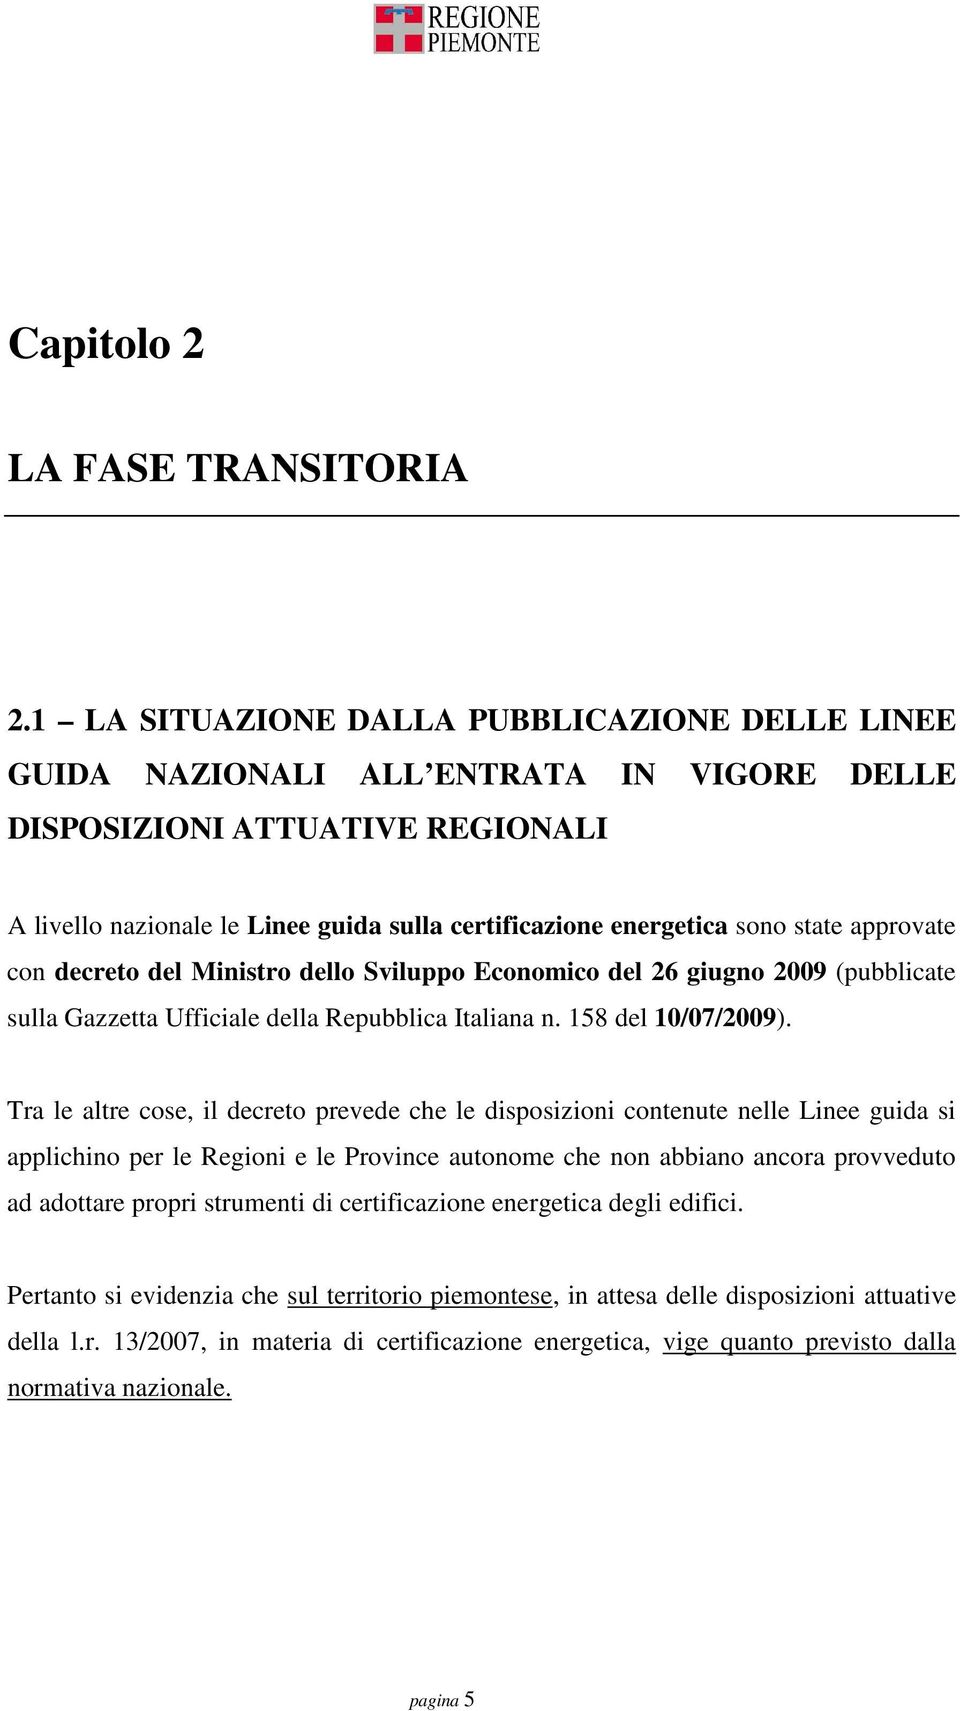 state approvate con decreto del Ministro dello Sviluppo Economico del 26 giugno 2009 (pubblicate sulla Gazzetta Ufficiale della Repubblica Italiana n. 158 del 10/07/2009).